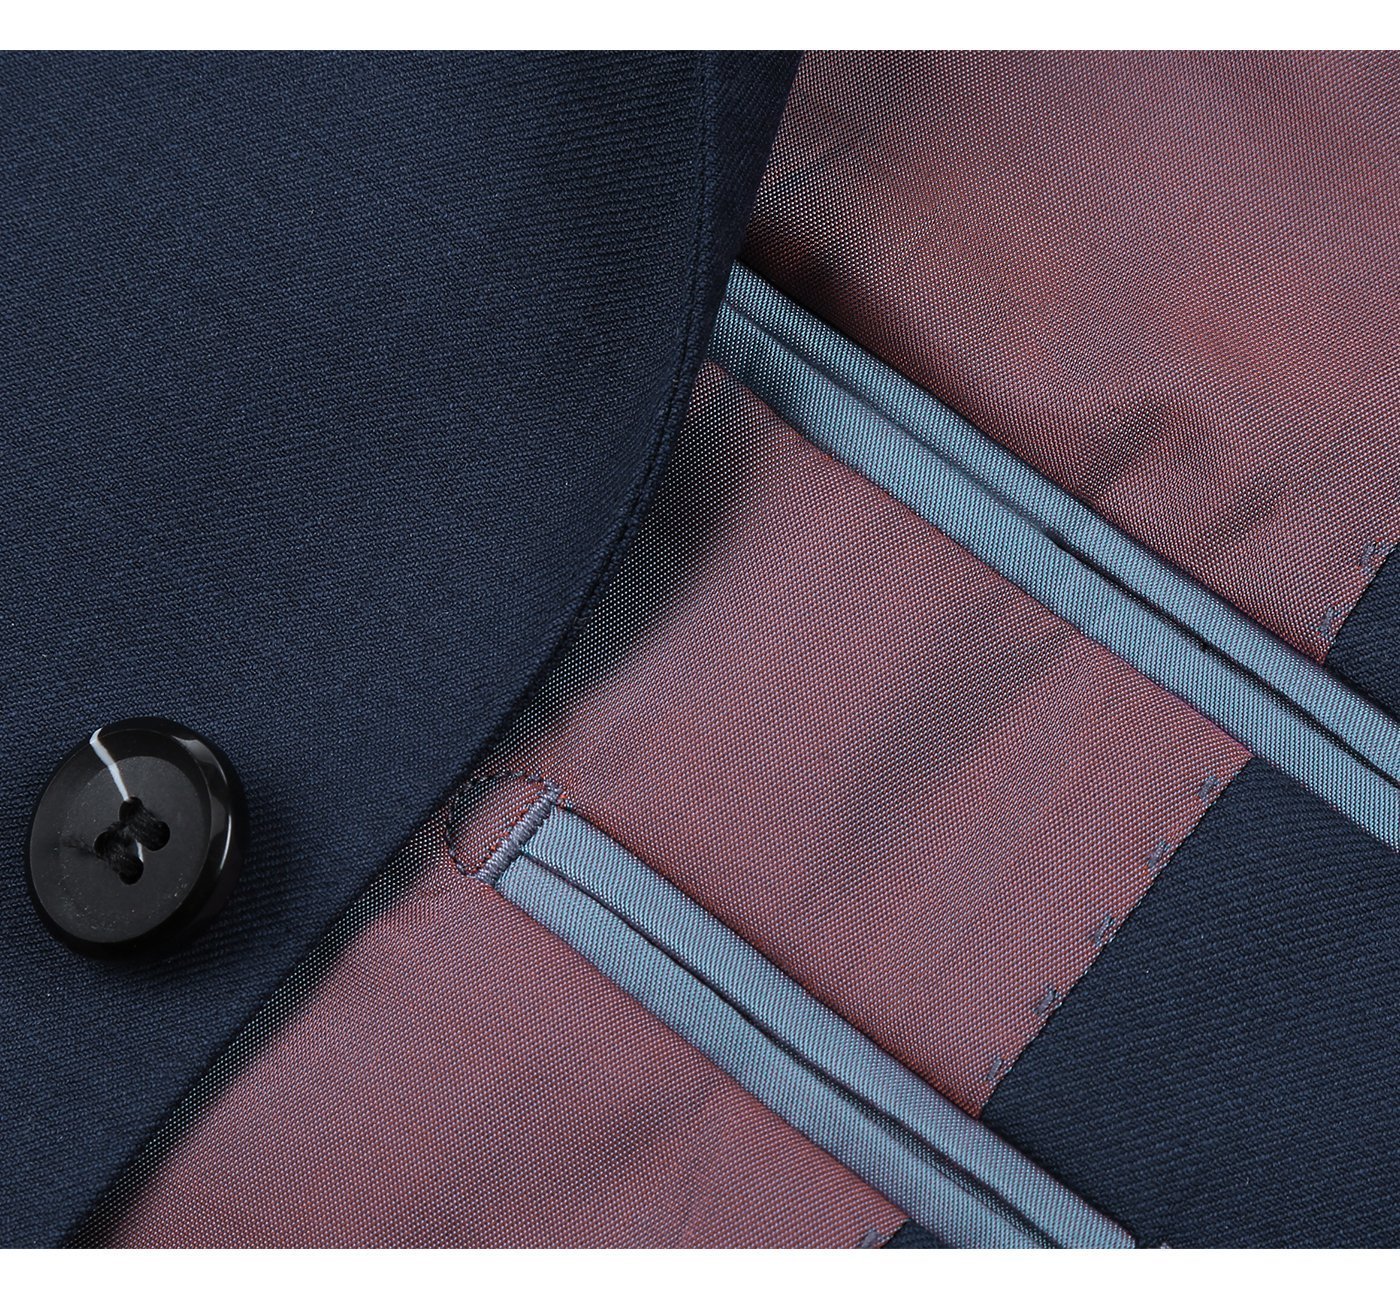 508-19 Blue Men's 2-Piece Notch Lapel 100% Wool Suit